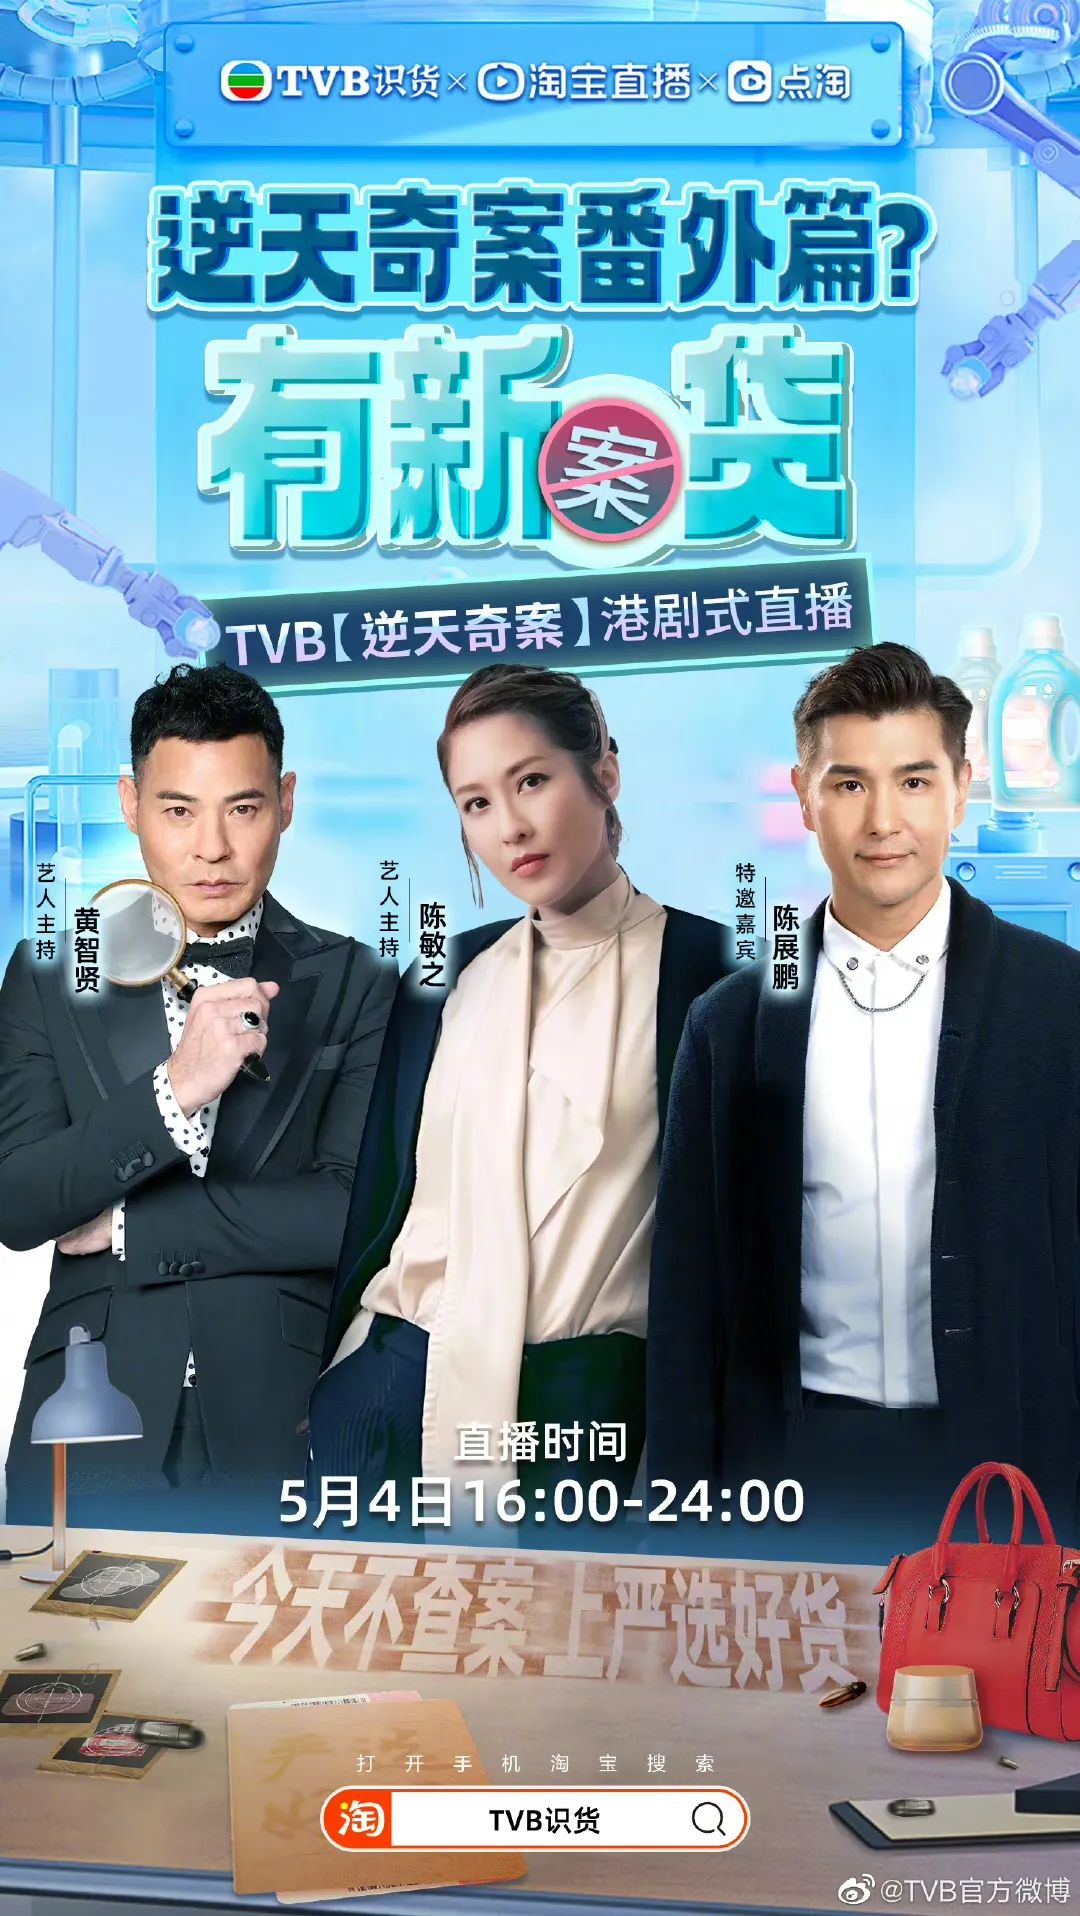 Hong Kong star Hong Kong style, TVB e-commerce live broadcast ...